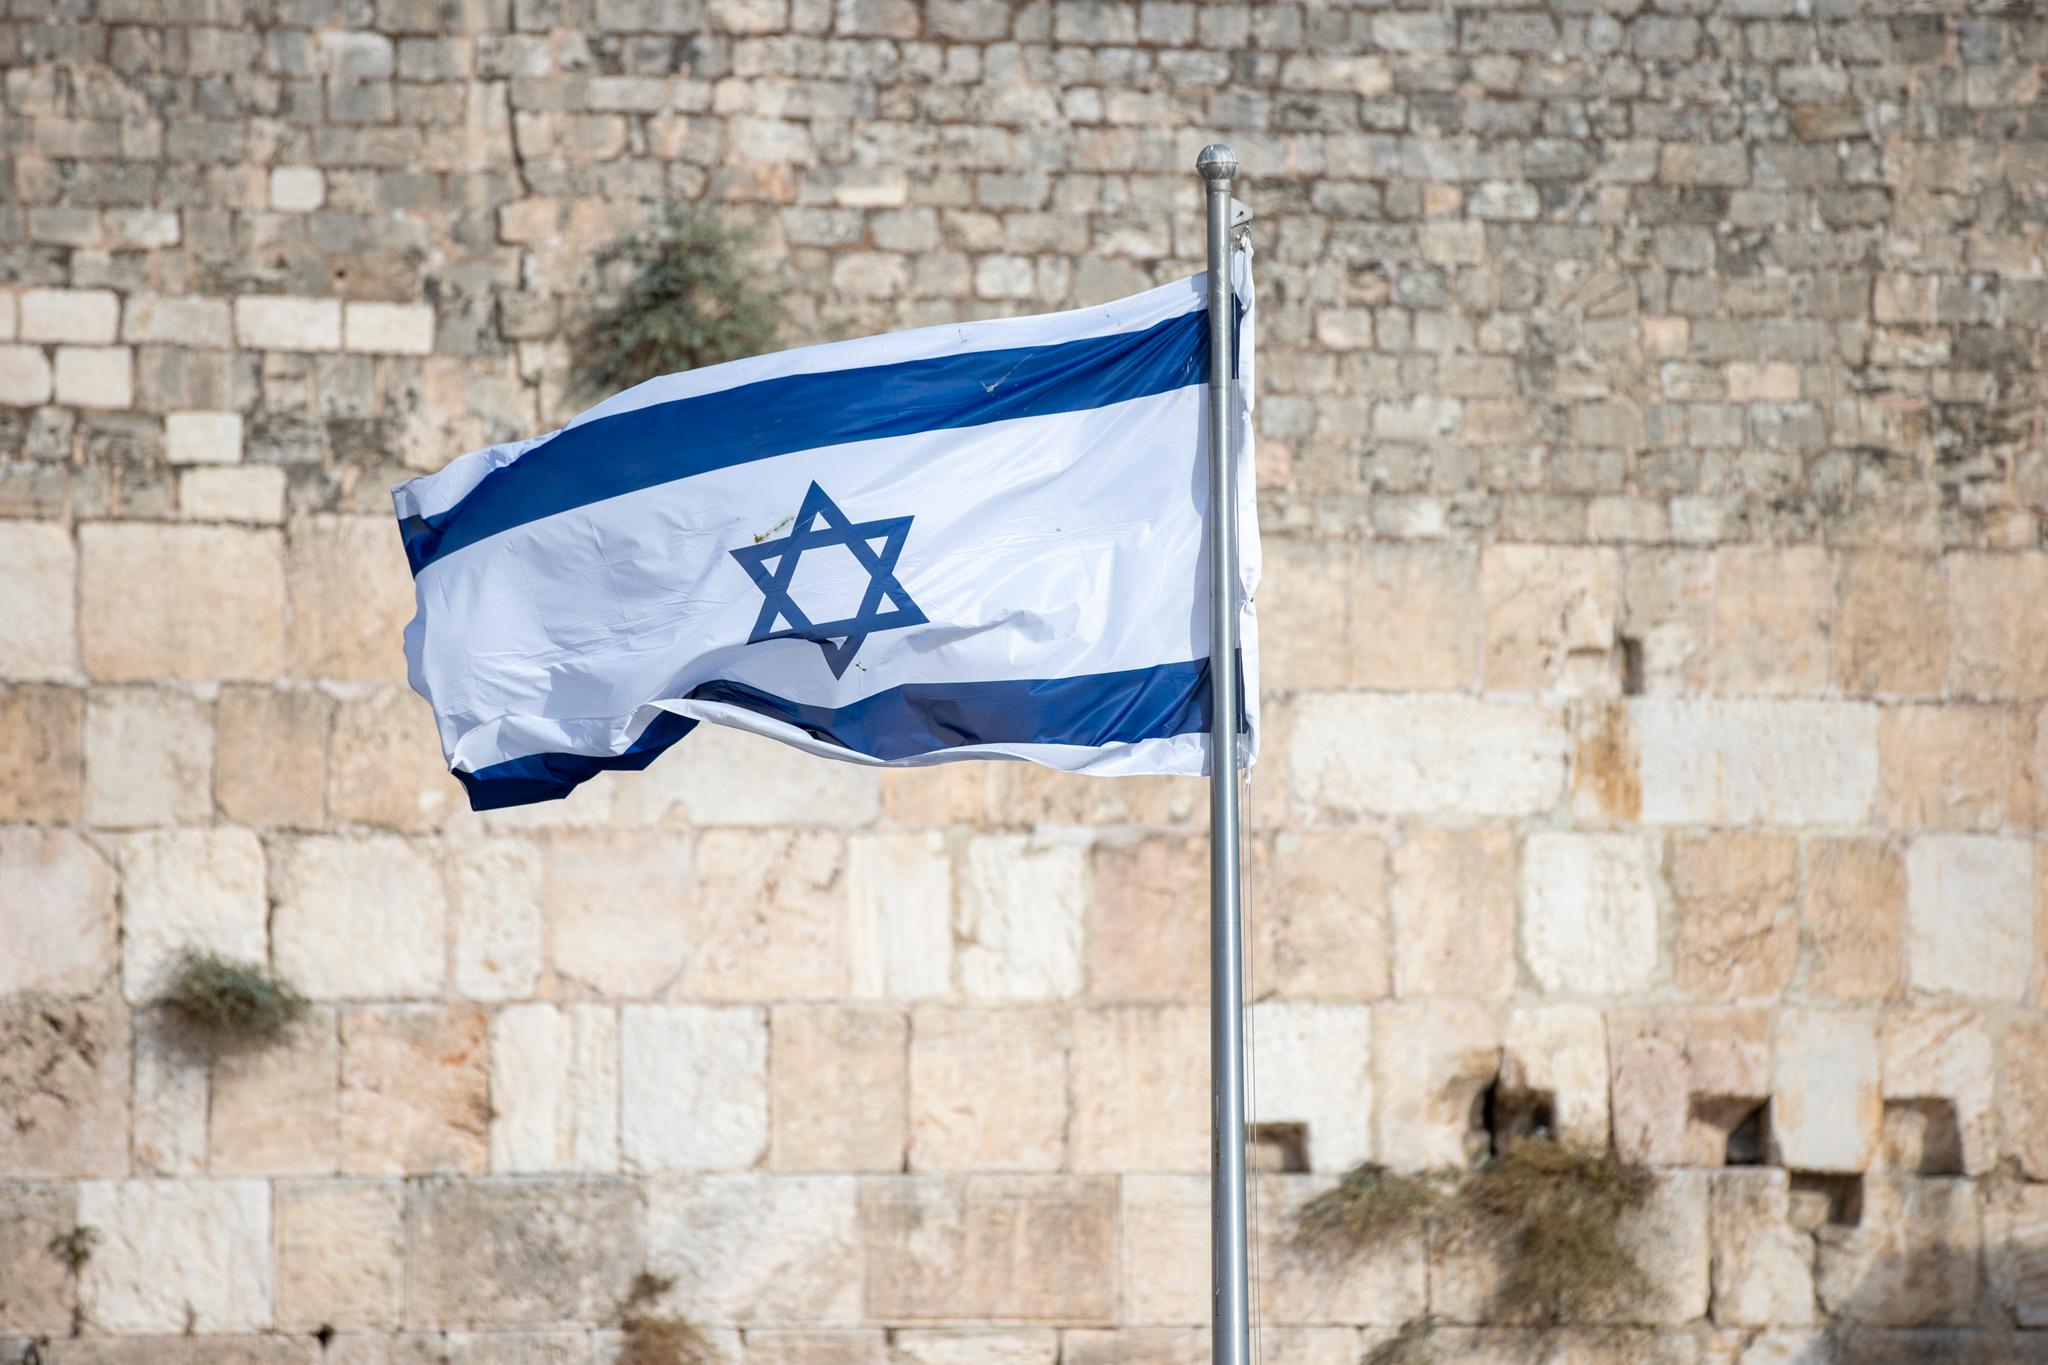 Magdi skriver historieløst om jøder og sionisme